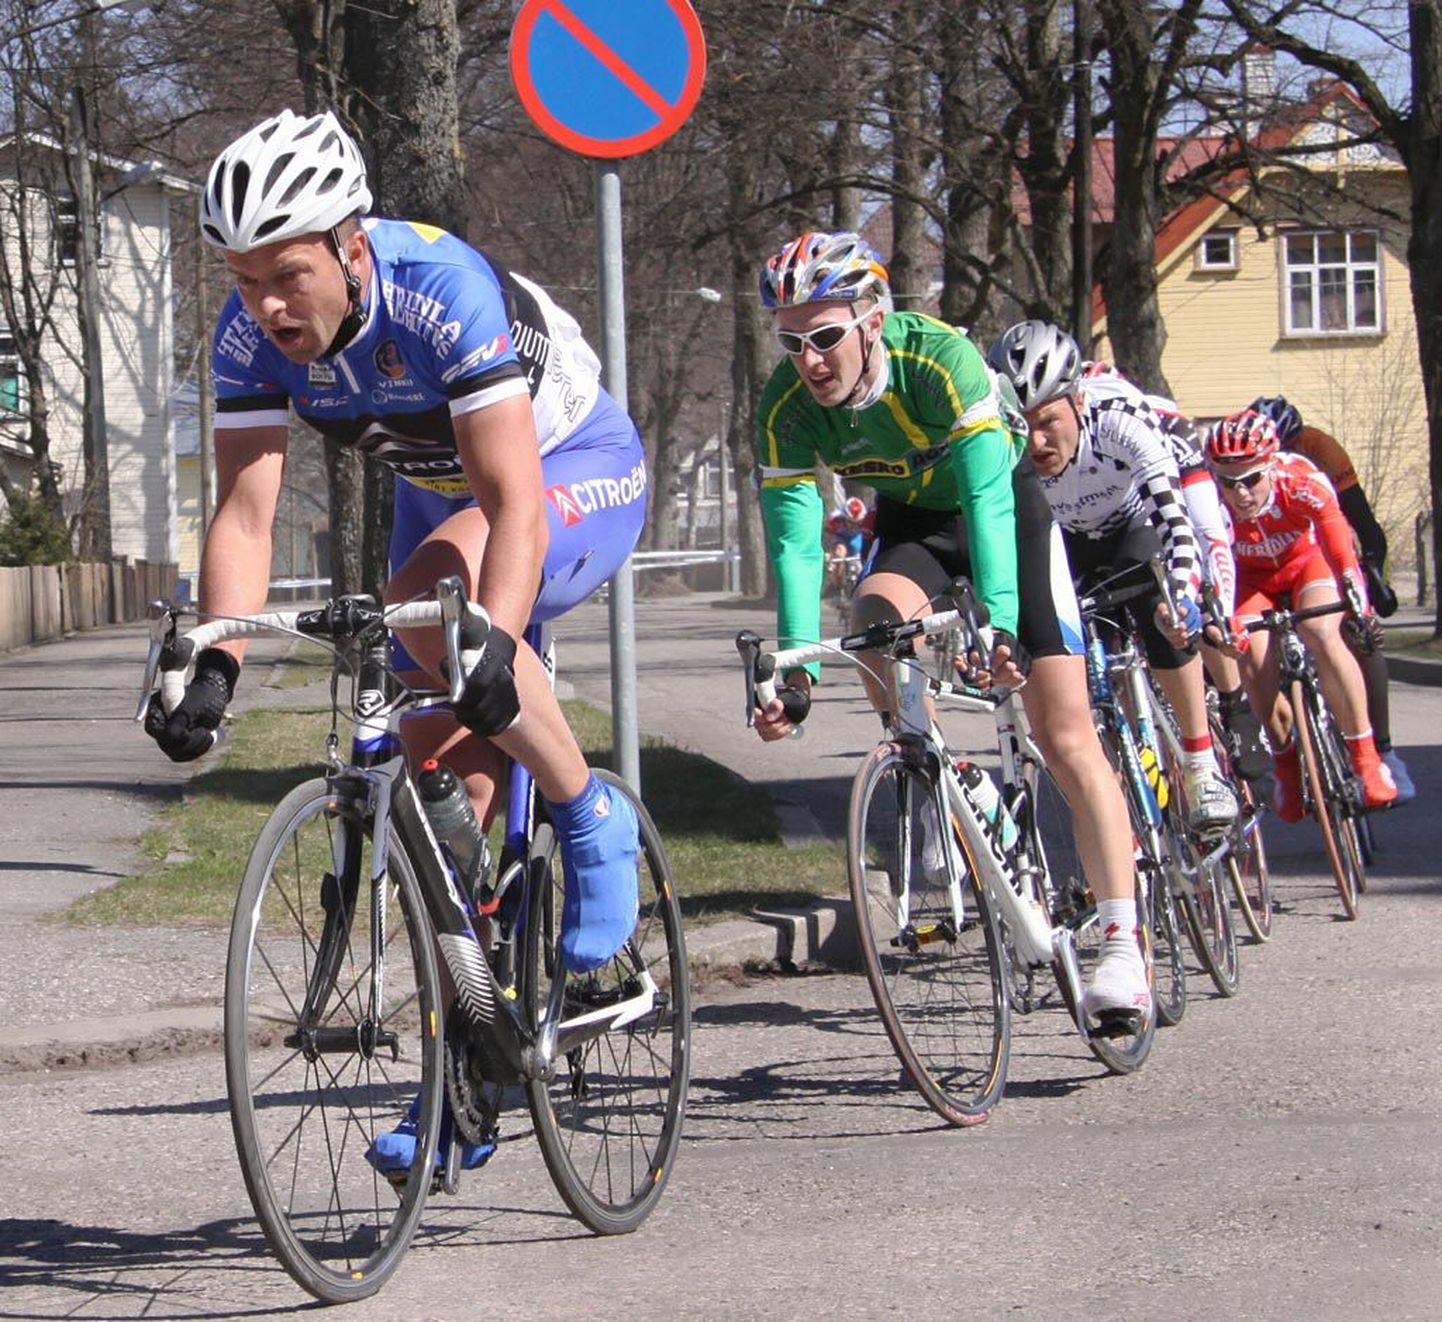 Eesti meistri särgis kihutanud Jaan Kirsipuu tagas endale võimsa lõpuga esikoha nii laupäevasel tänavasõidul kui pühapäeval rattarallil.